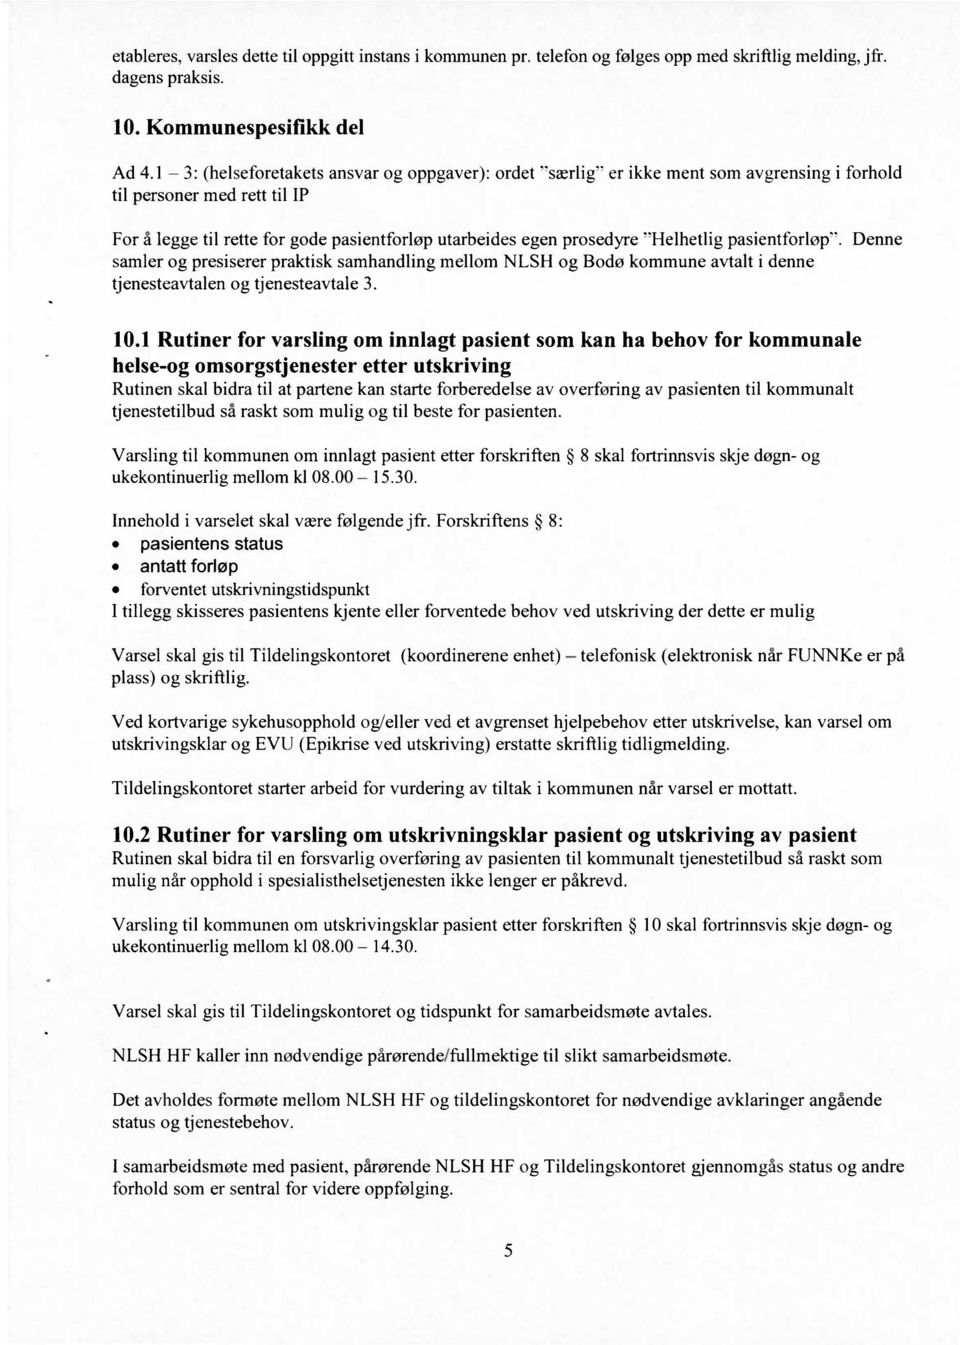 pasientforløp-. samler og presiserer praktisk samhandling mellom NLSH og Bodø kommune avtalt i denne tjenesteavtalen og tjenesteavtale 3. Denne 10.